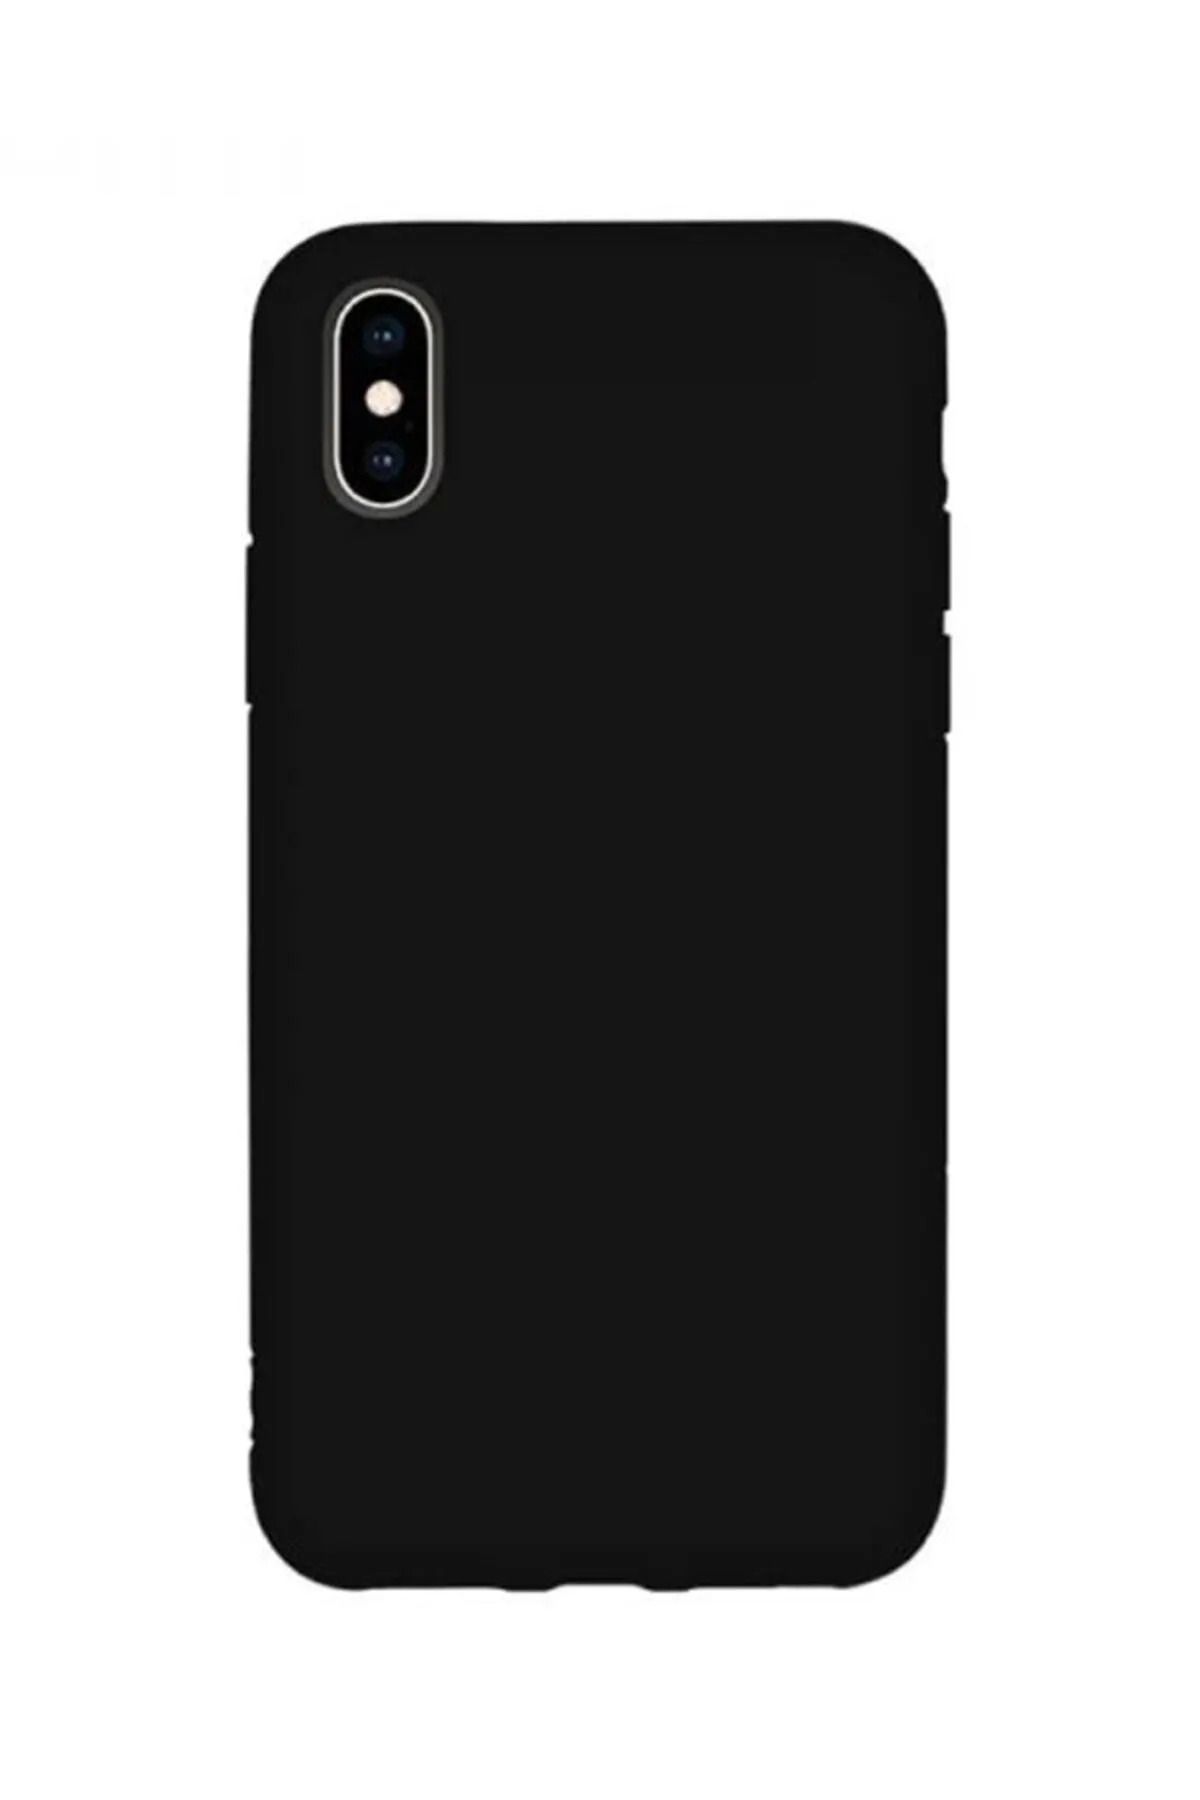 KVK PRİVACY Apple Iphone X/xs Uyumlu Içi Kadife Lansman Silikon Kılıf Kapak Siyah